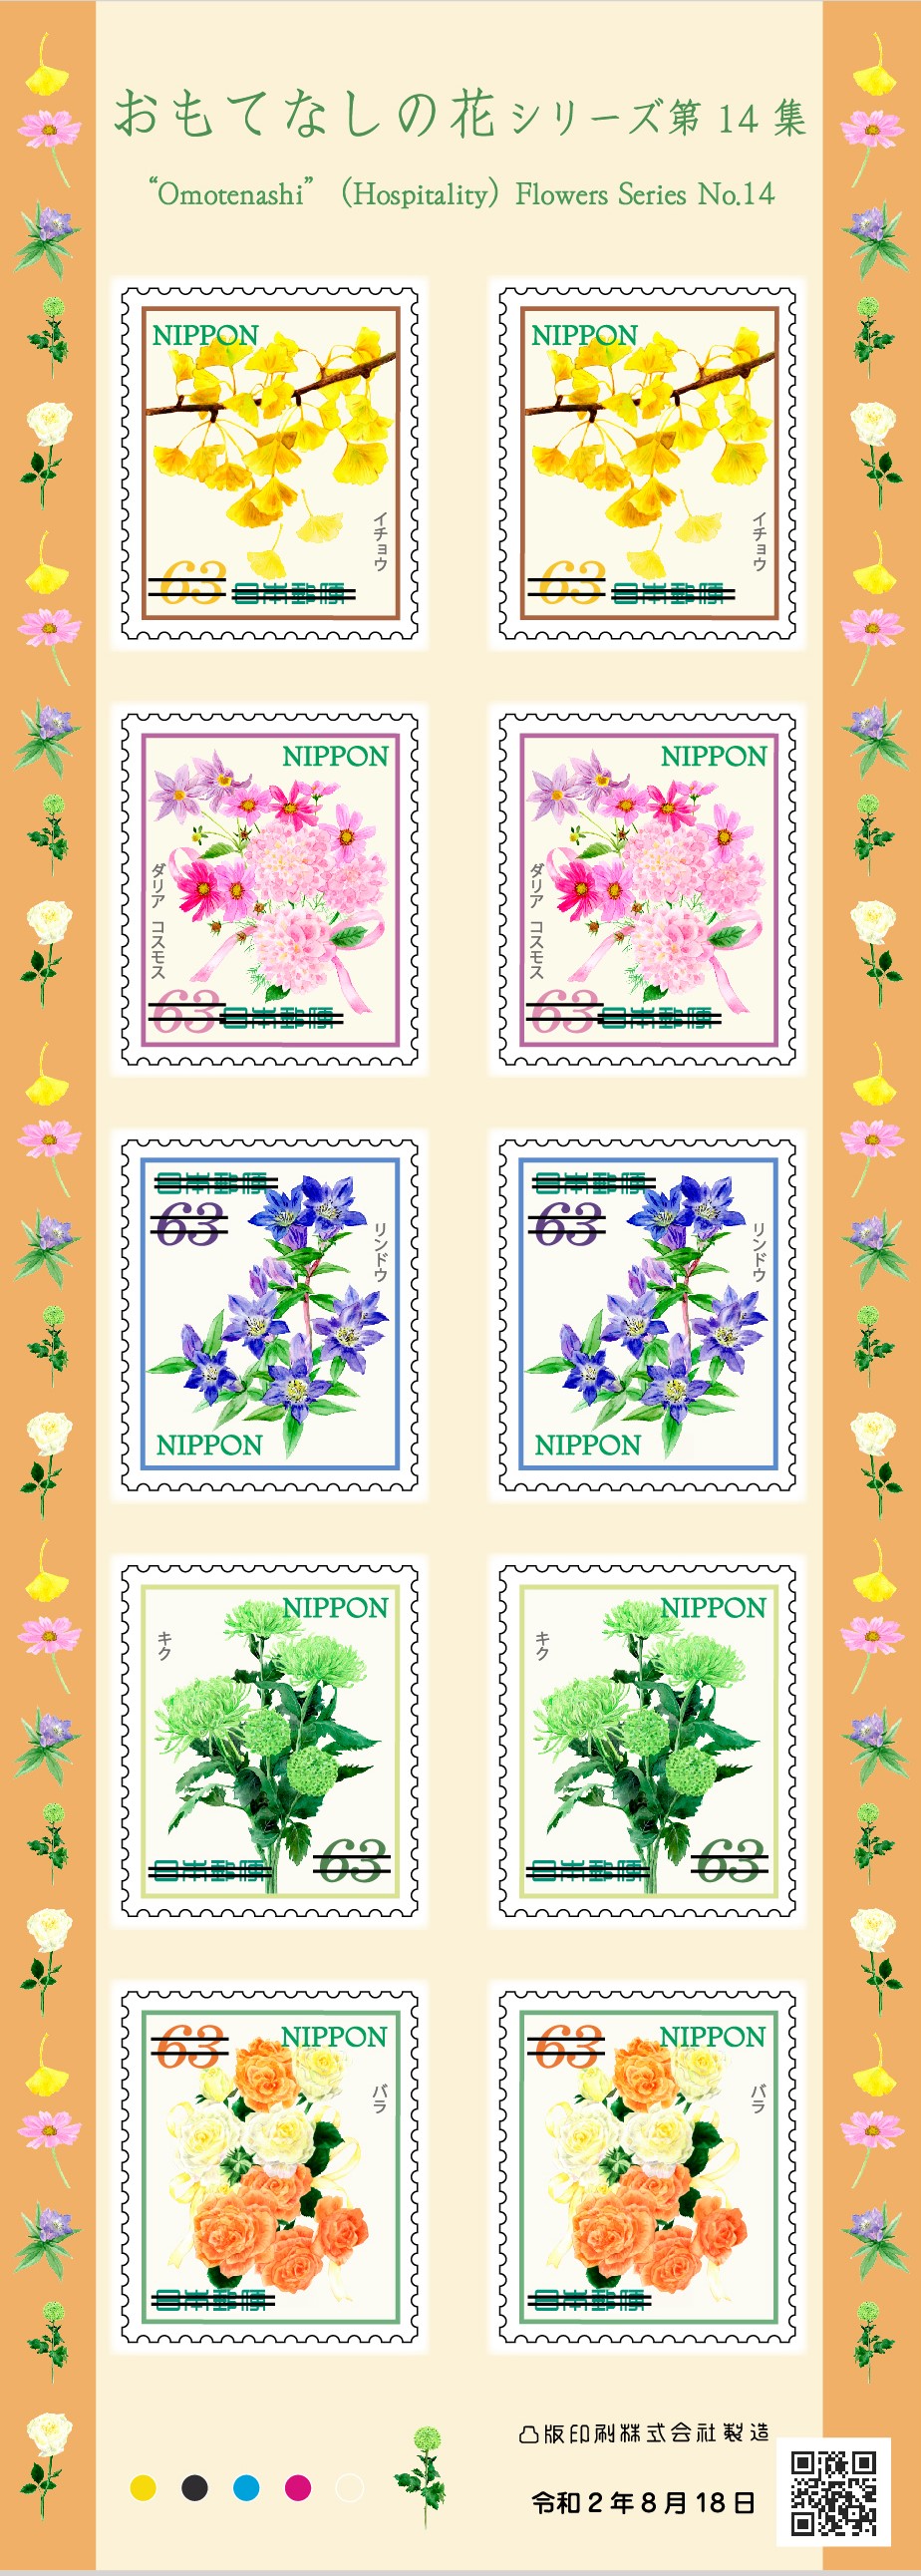 おもてなしの花シリーズ 第14集 | 日本郵便株式会社